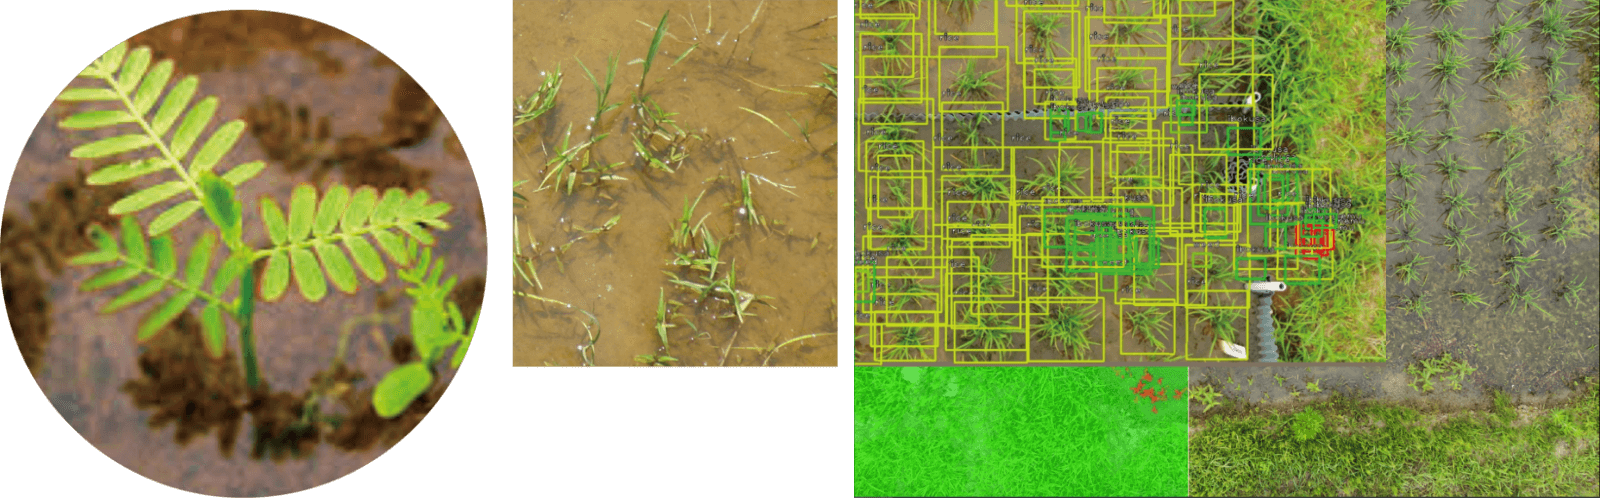 AIで特定の雑草を判別し、適切に除草剤を散布するピンポイント除草も可能